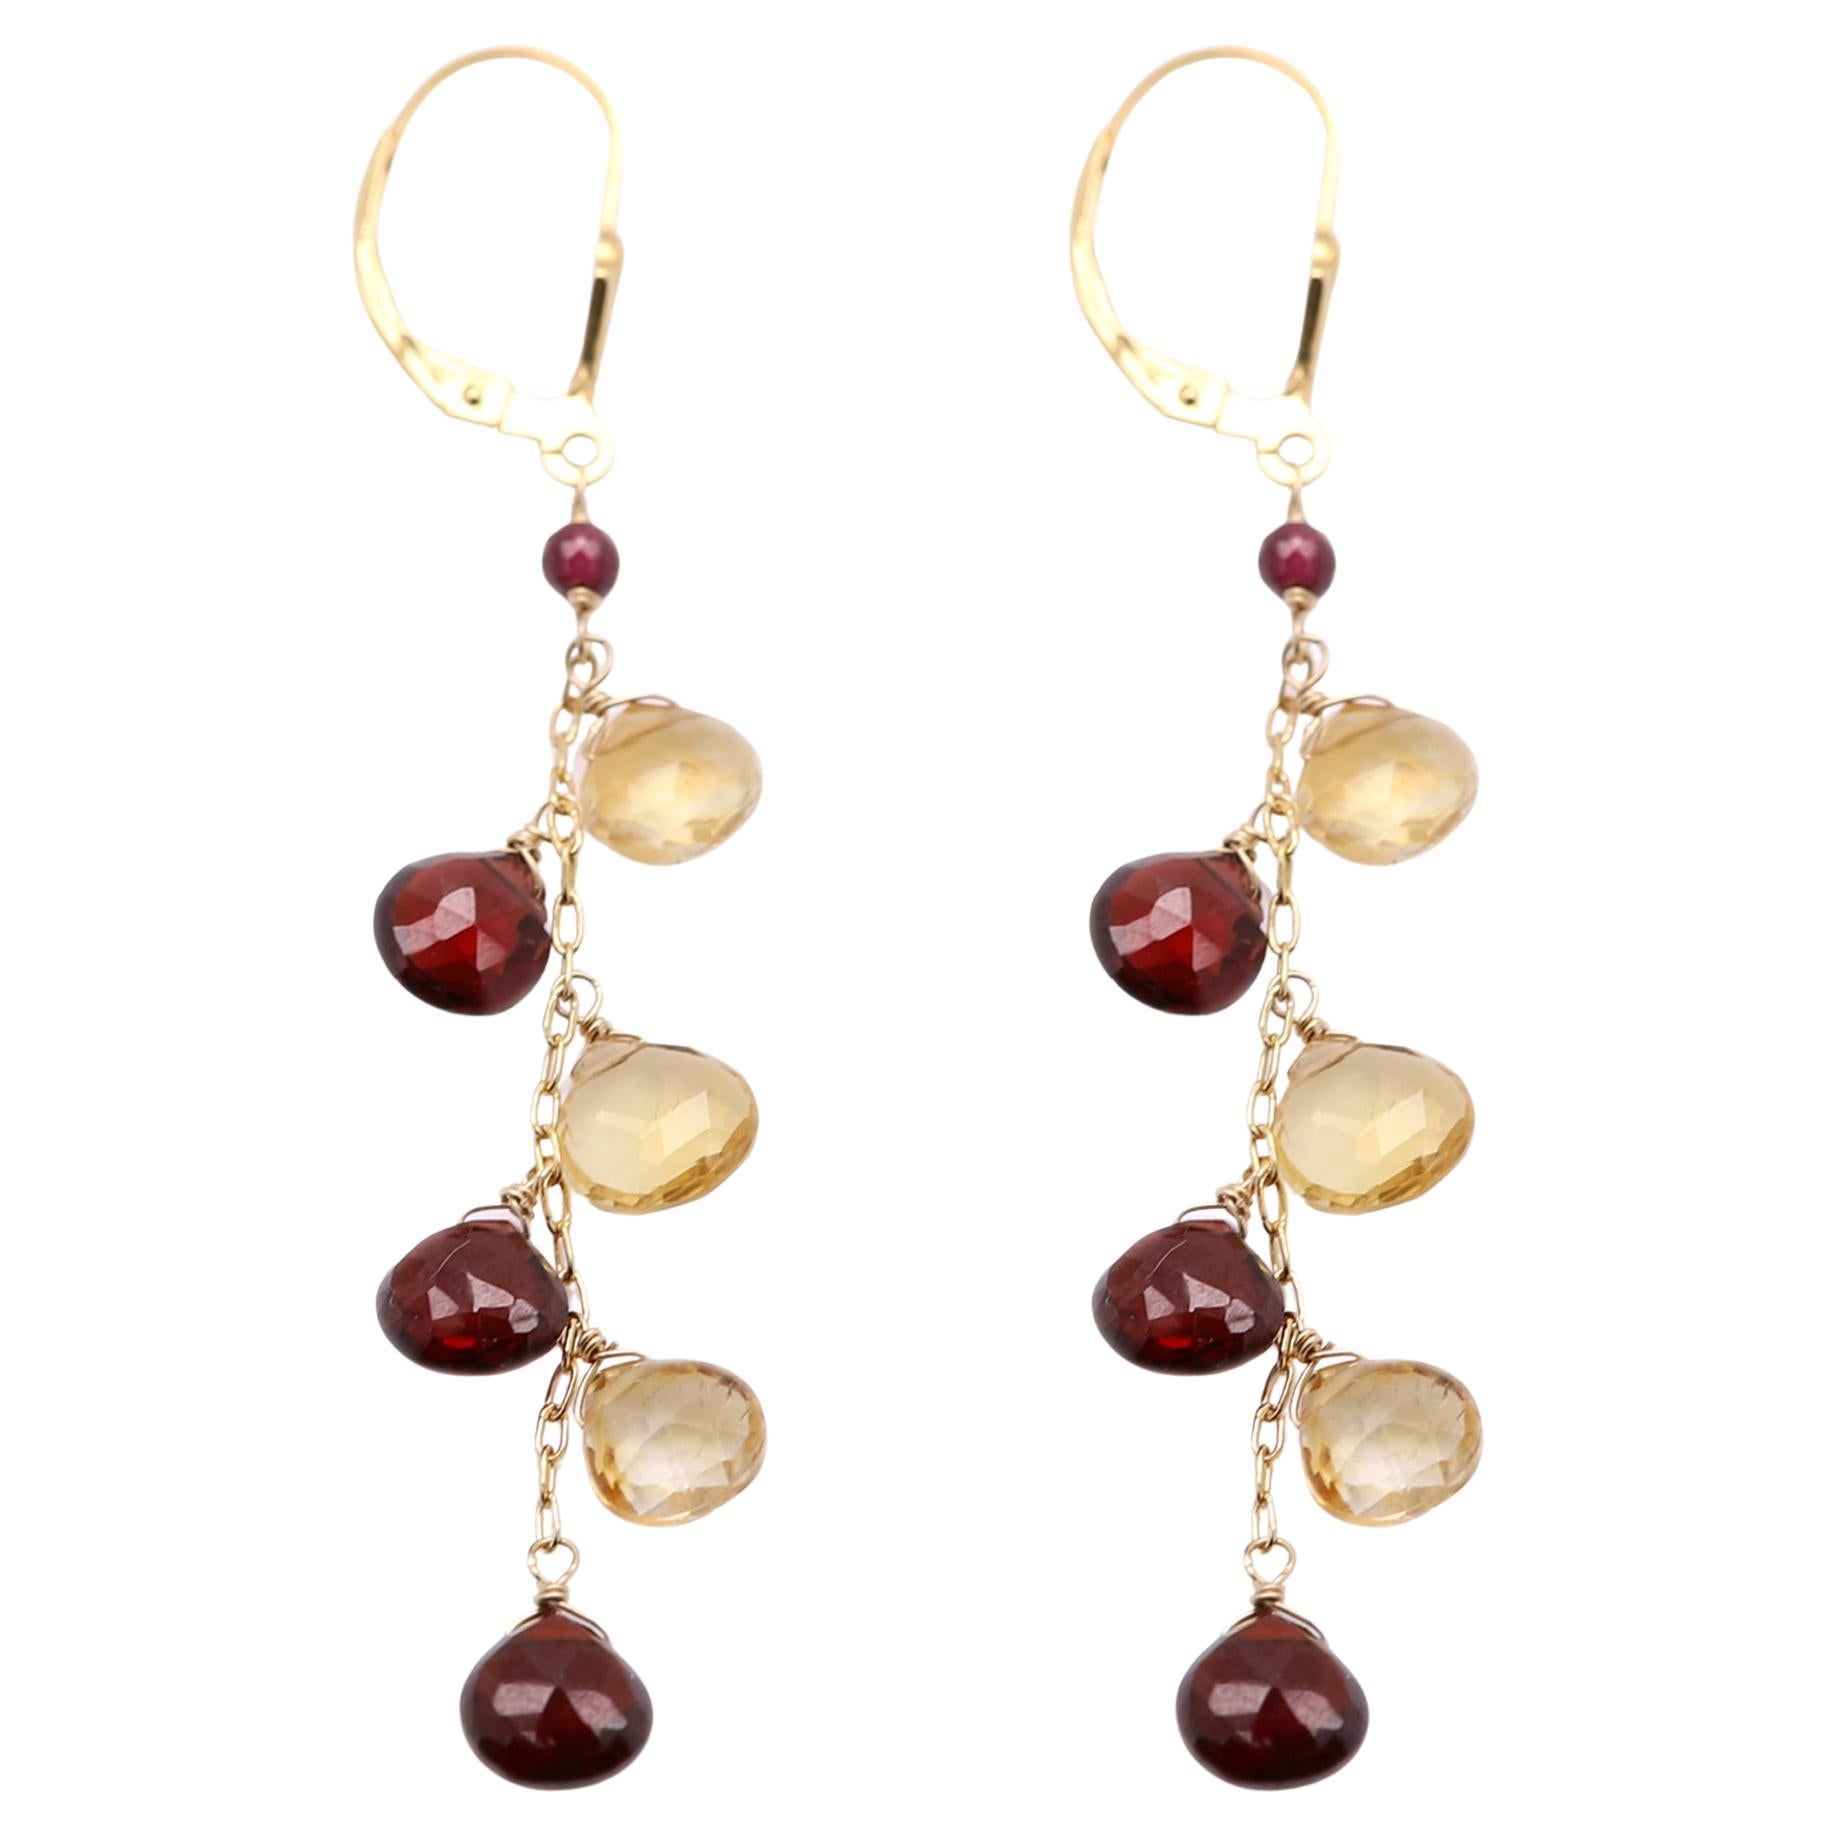 Boucles d'oreilles pendantes en or jaune 14 carats avec pierres semi-précieuses multicolores